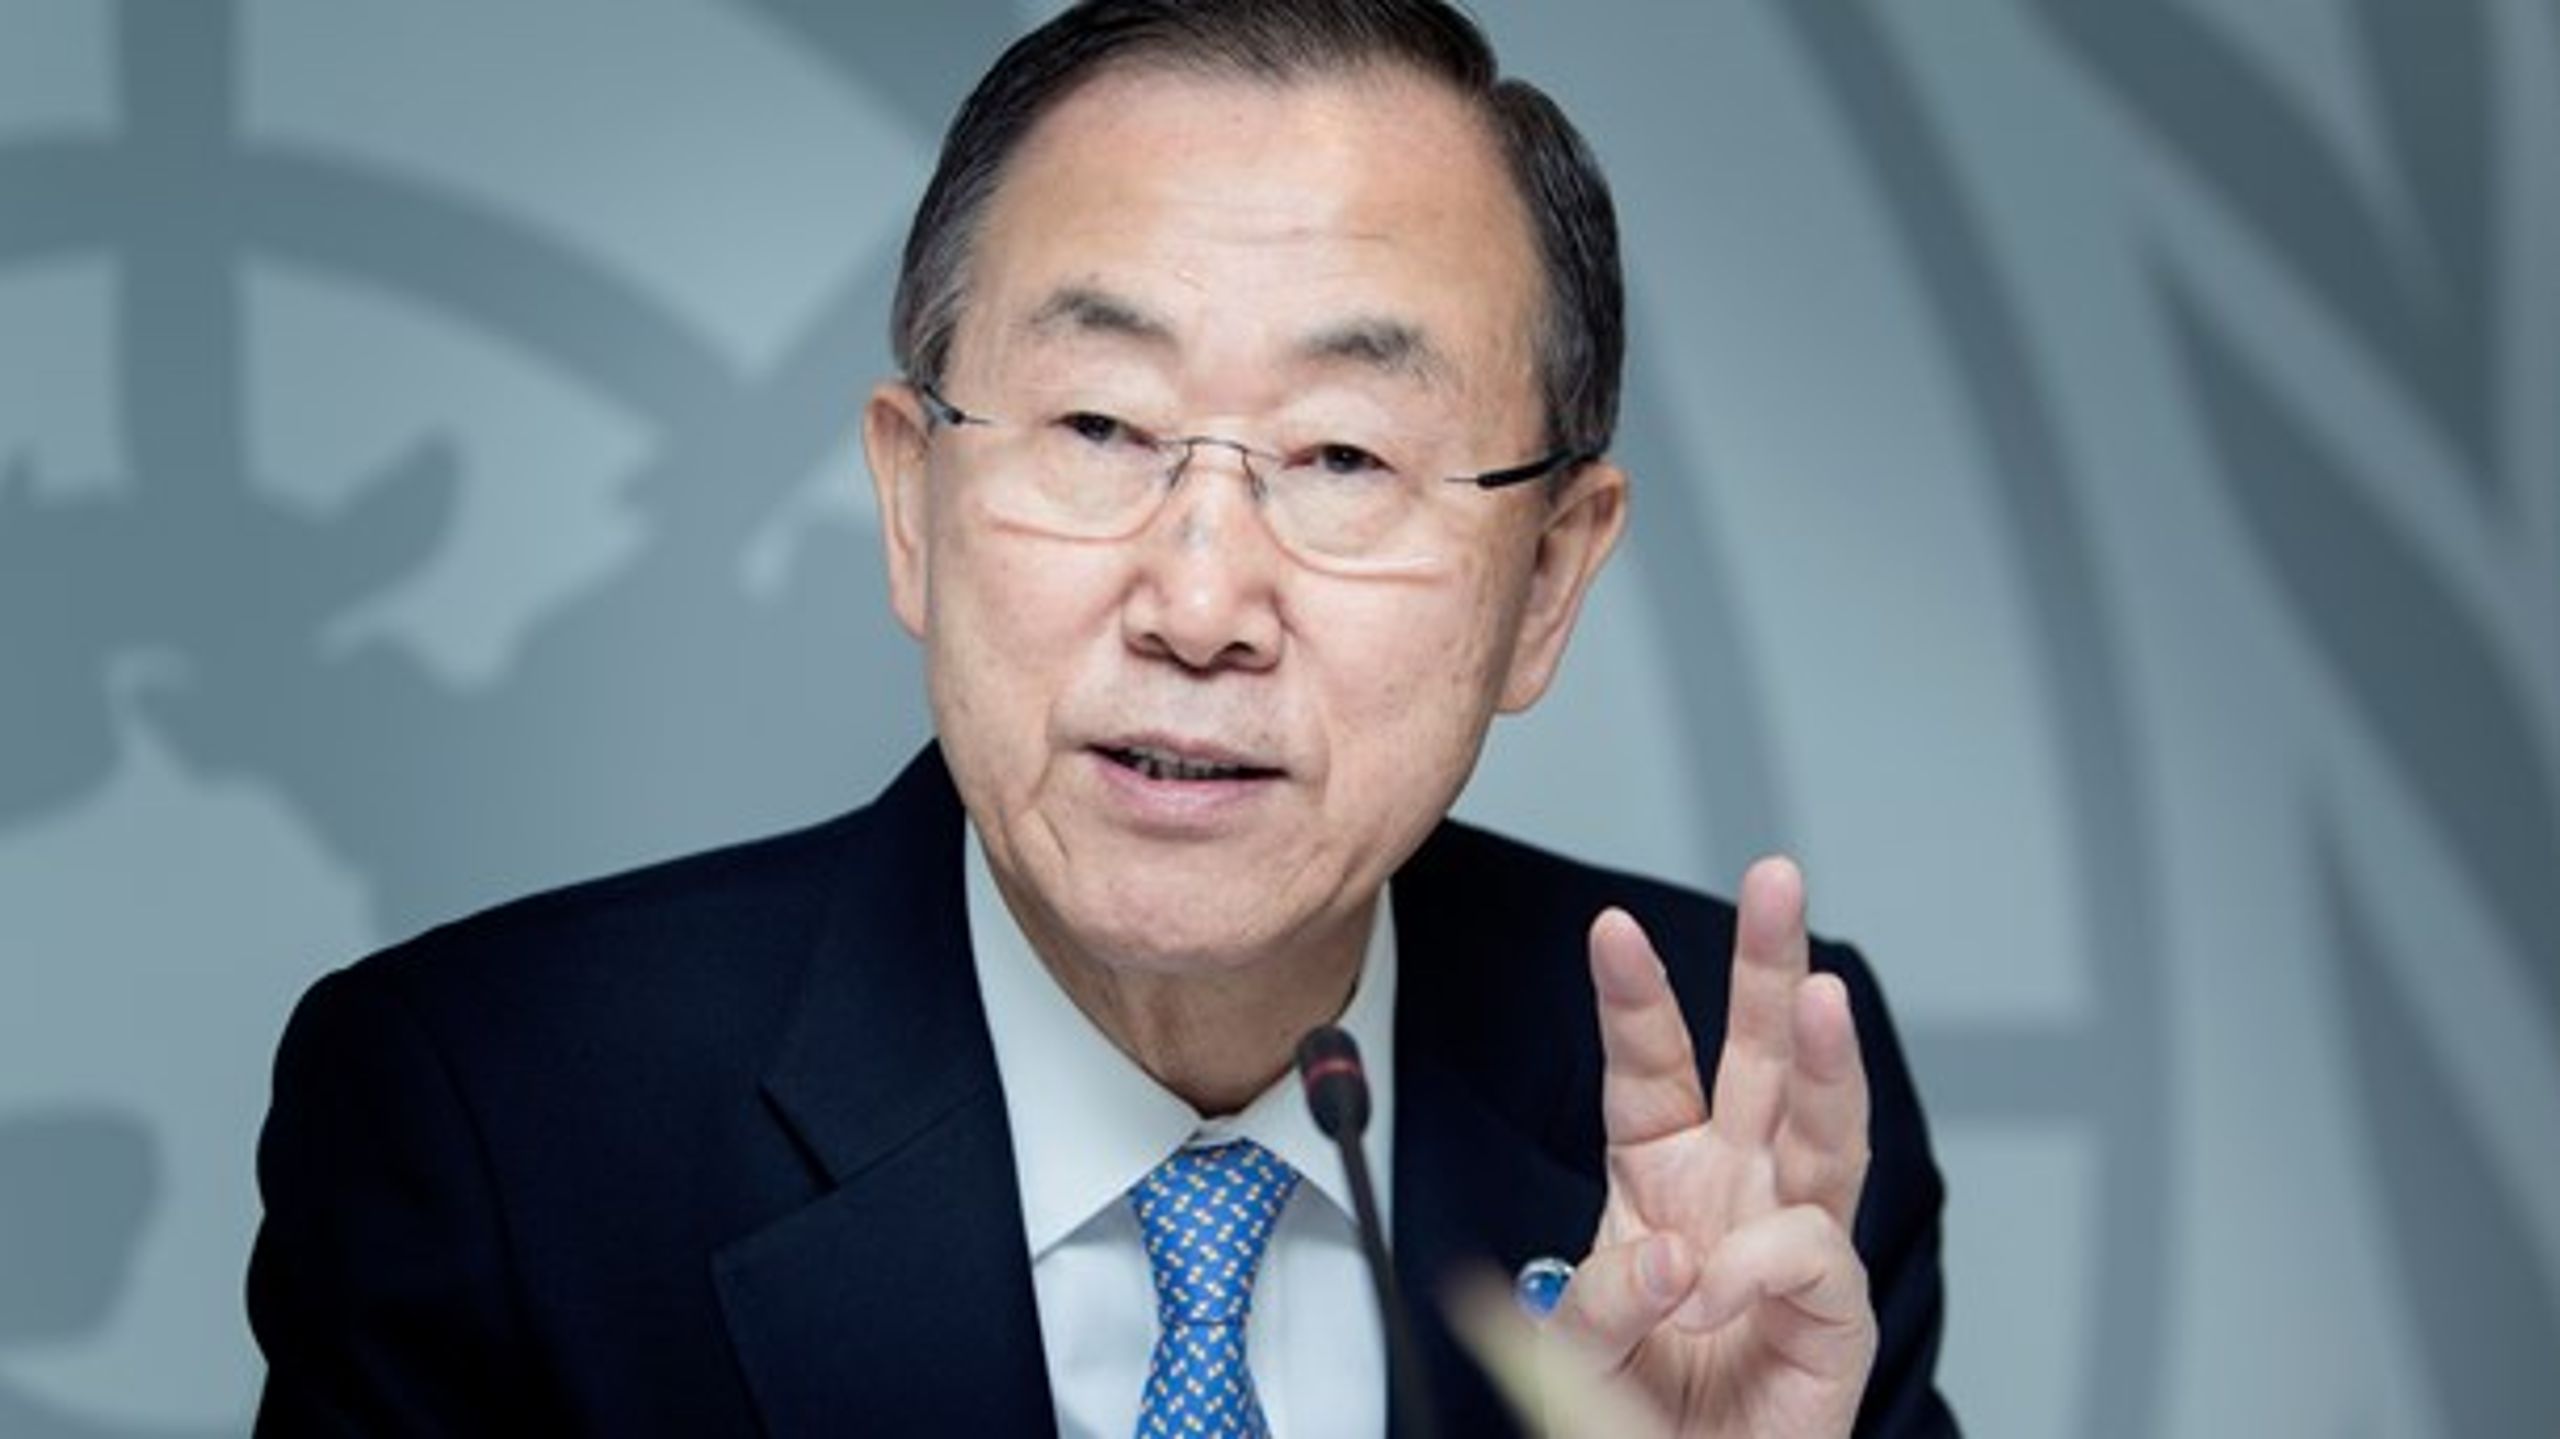 En ny rapport, udarbejdet af blandt andre tidligere FN-generalsekretær Ban Ki-moon, fastslår, at klimatilpasning er en god investering.